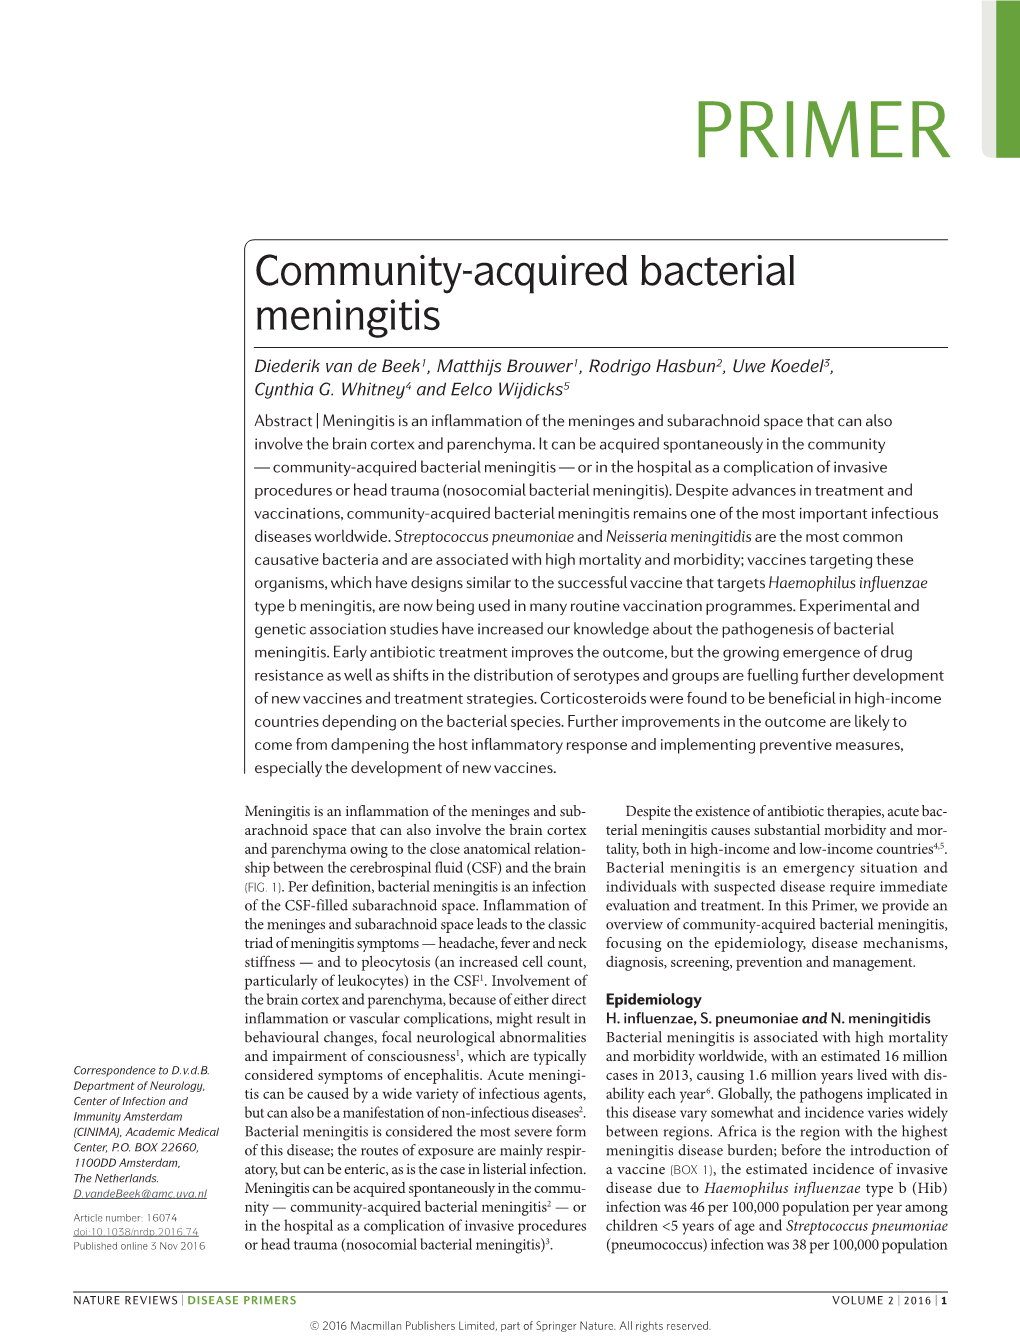 Community-Acquired Bacterial Meningitis